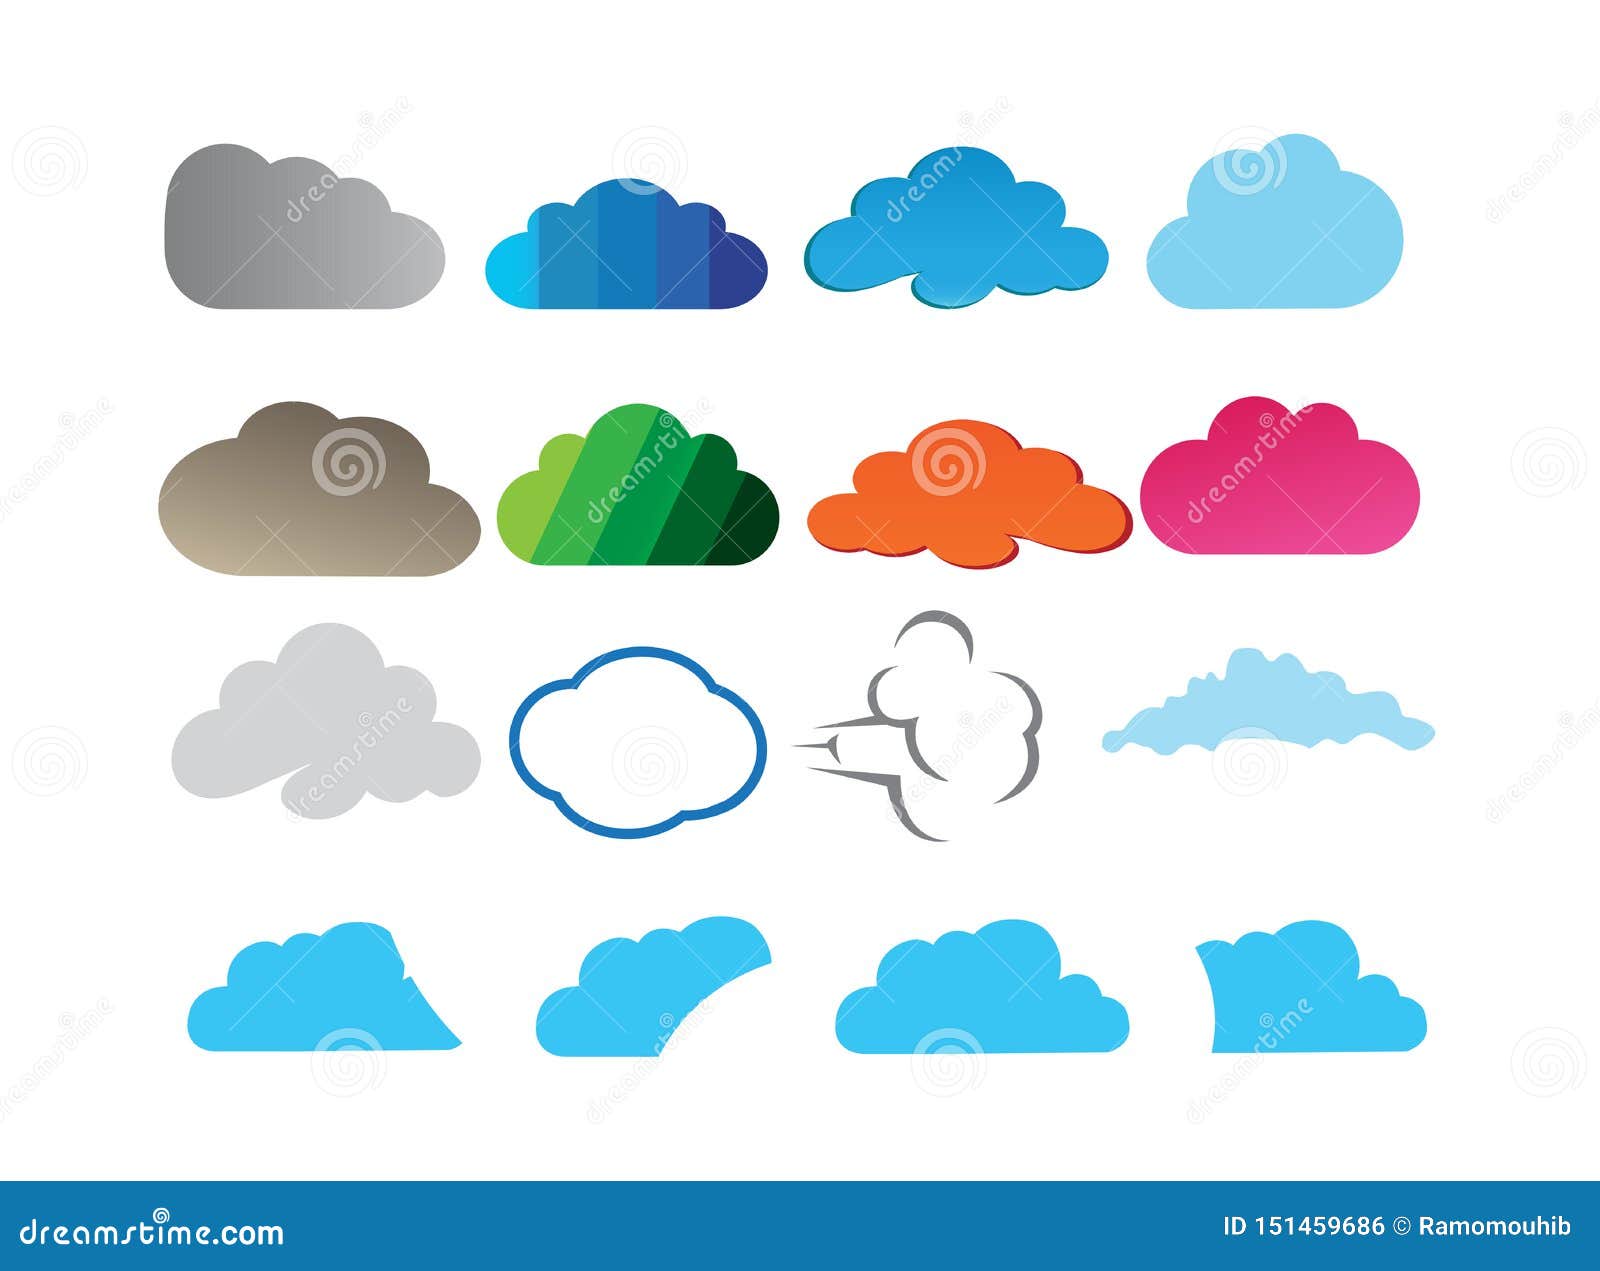 Clouds Set Design for Logo Illustration Stock Illustration ...